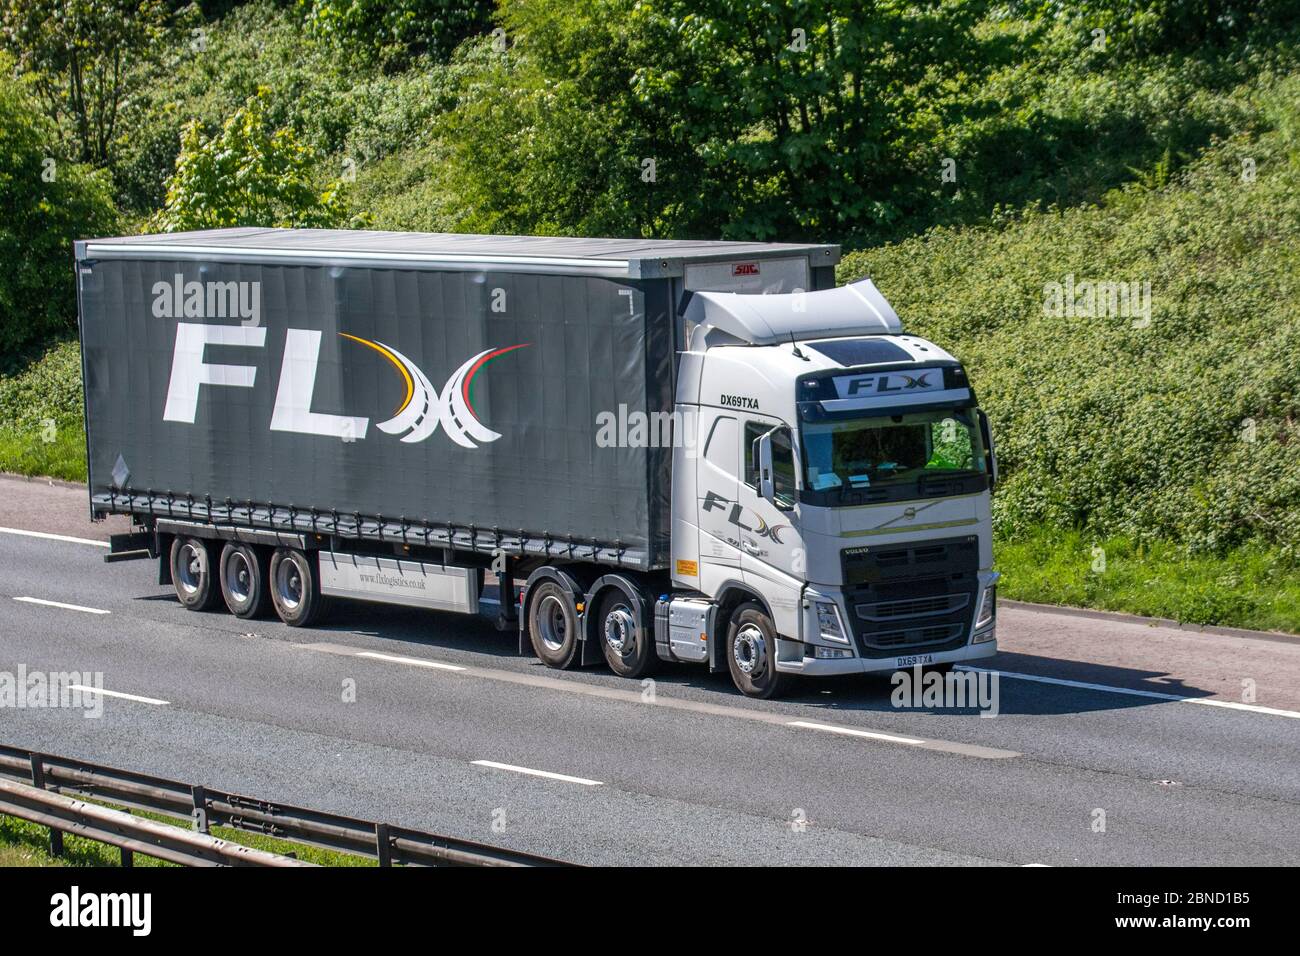 FLX Logistics Carrington; transport de camions, camion, transport, camion, transporteur de fret, véhicule Volvo, transport commercial européen, industrie, M6 à Manchester, Royaume-Uni Banque D'Images